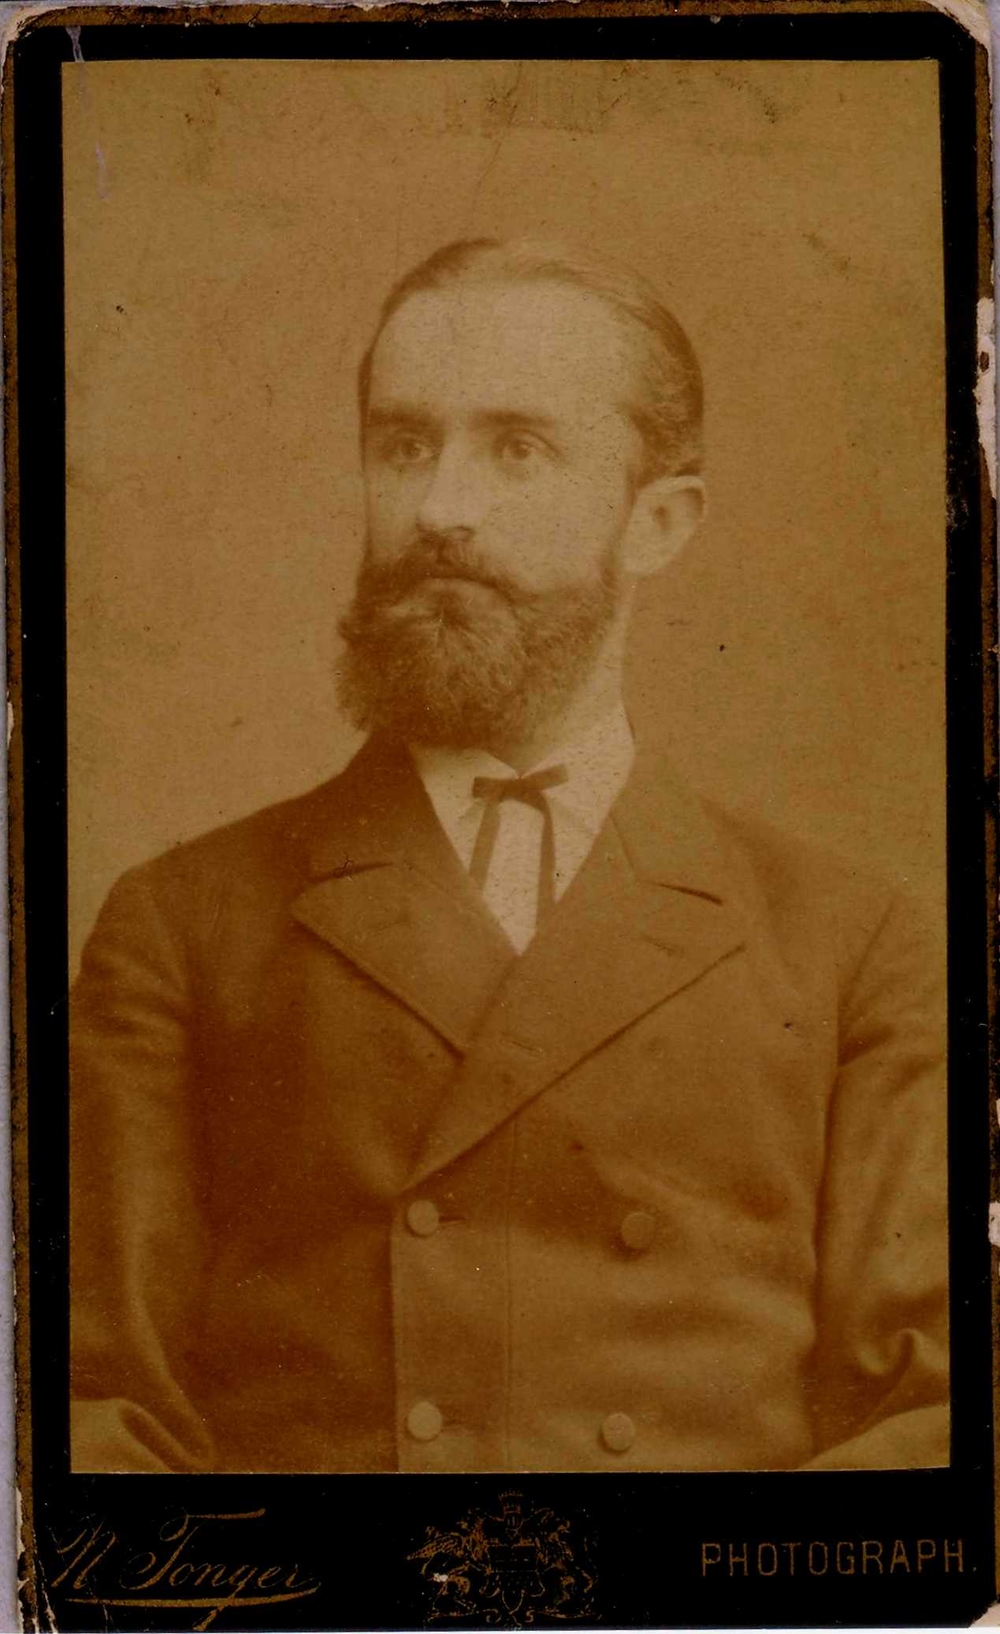 Pfarrer Carl Idel
1879 - 1884